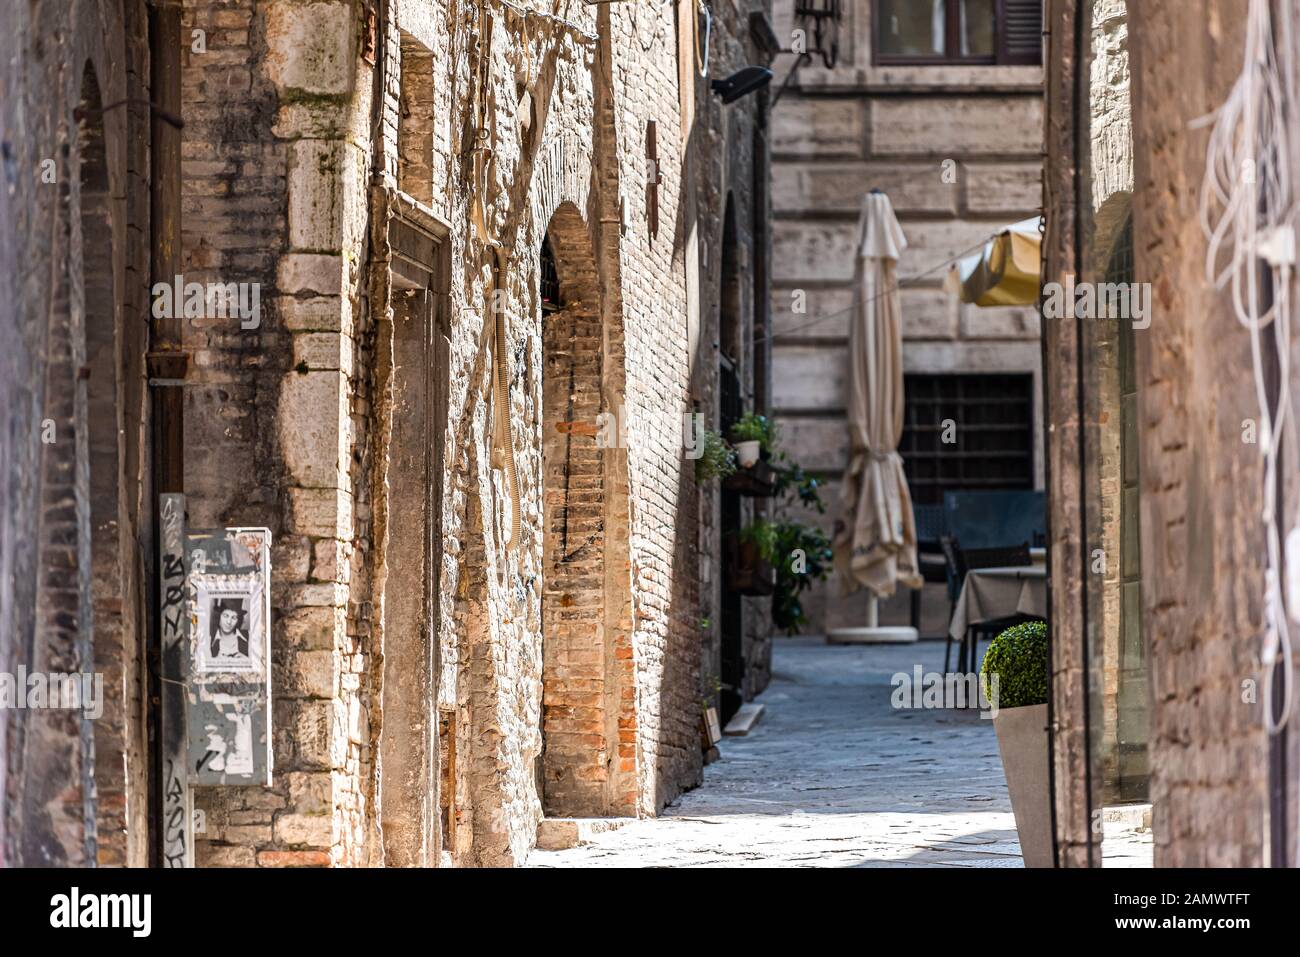 Pérouse, Italie - 29 août 2018: Vieux bâtiments historiques médiévaux étrusques du village de ville en été avec allée étroite en pierre Banque D'Images